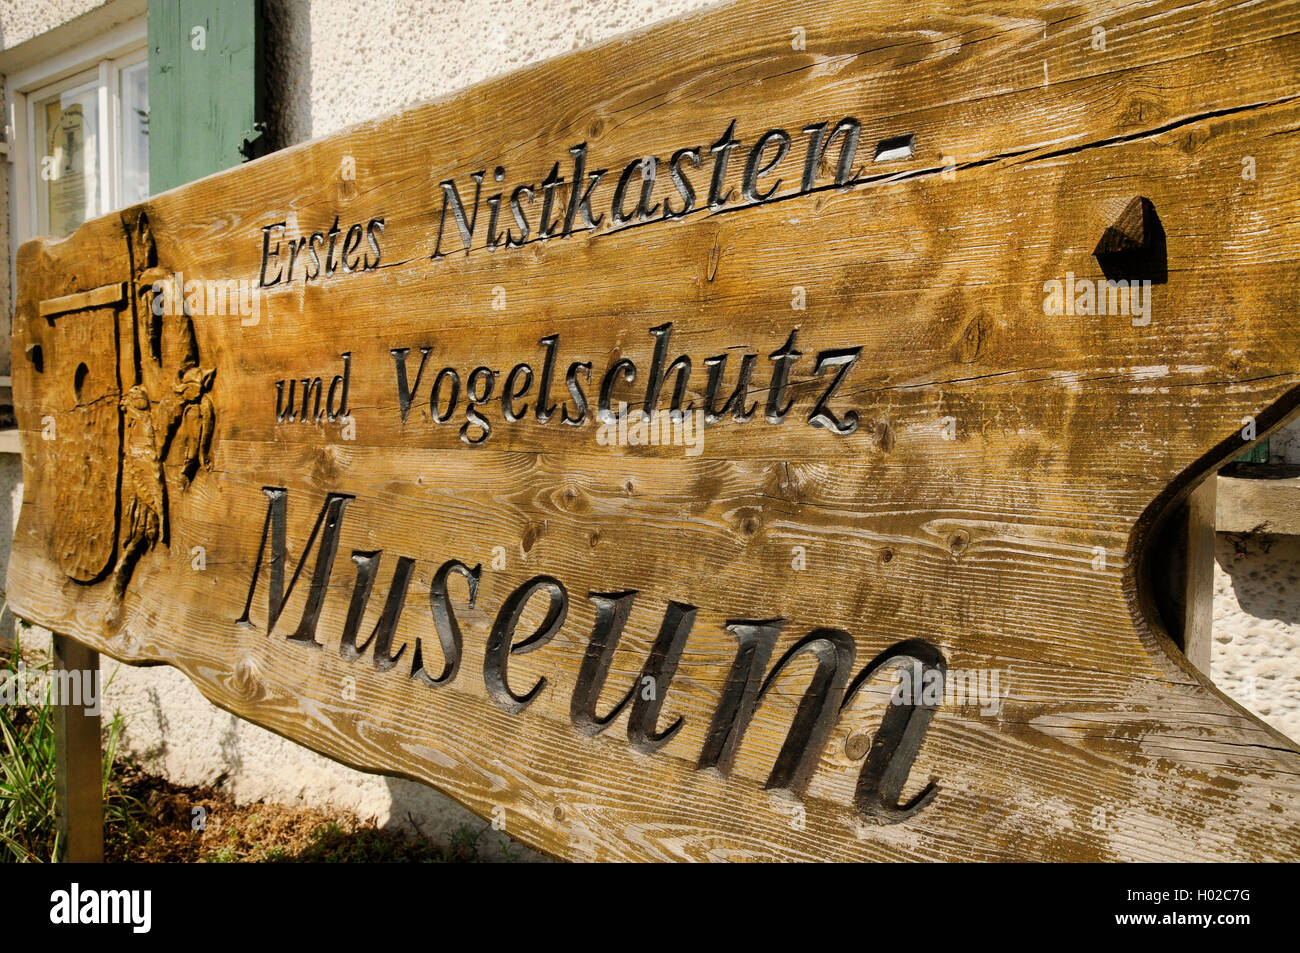 Nistkastenmuseum, Schild | nesting box museum, sign, Germany, Baden-Wuerttemberg | BLWS434244.jpg [ (c) blickwinkel/H.-J. Zimmer Stock Photo